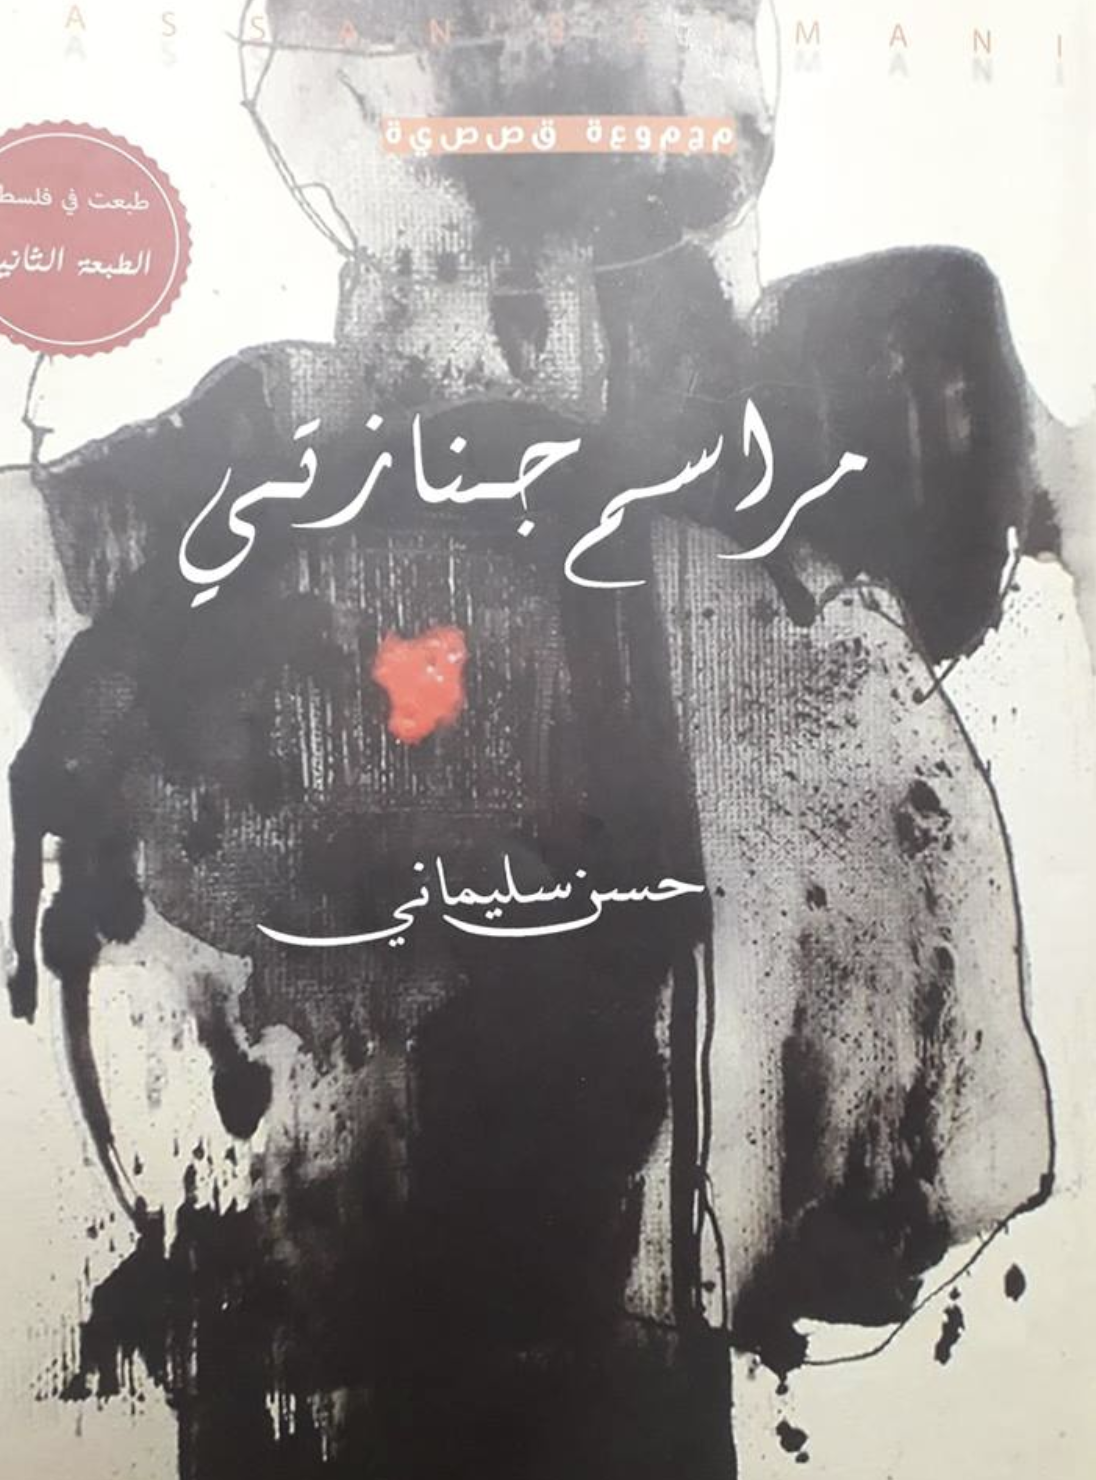 تيمة الموت كباعث للحياة في مجموعة (مراسم جنازتي) للكاتب المغربي حسن سليماني